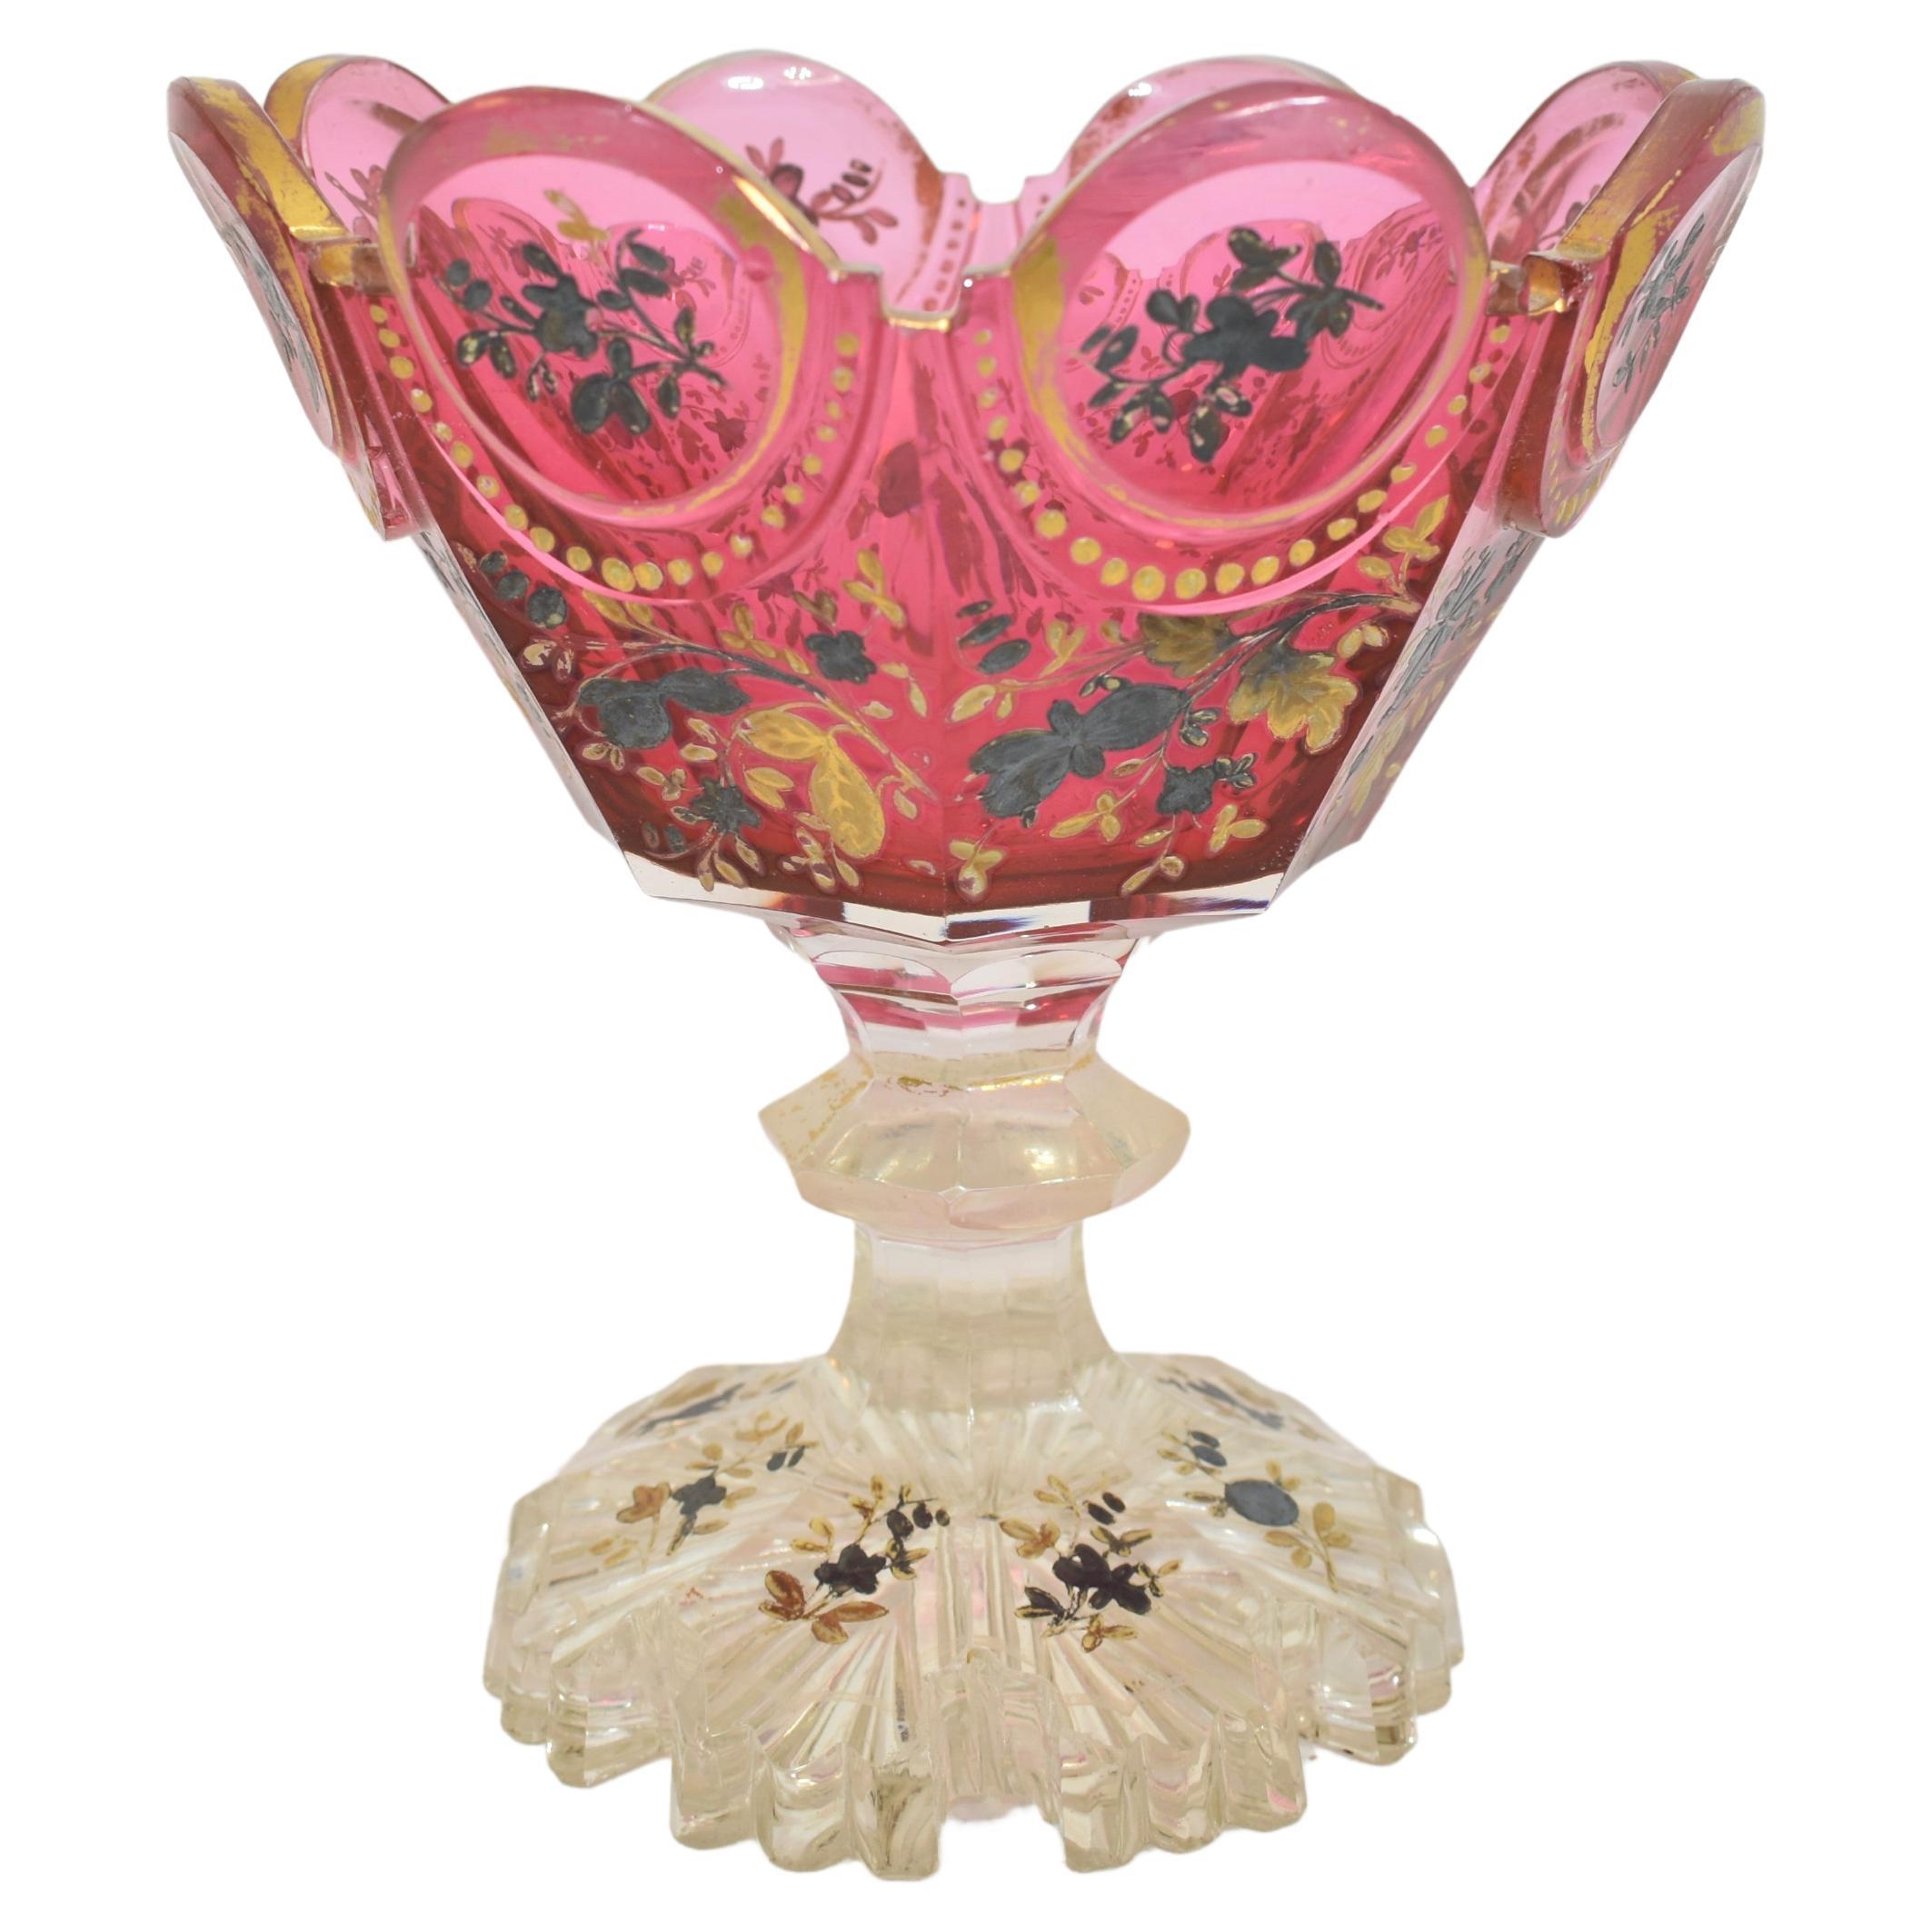 Antike Tazza-Schale aus cranberryfarbenem Glas
steht auf einem geschliffenen Klarglas-Fuß mit ausgestellter Basis am Boden
rundum mit Gold- und Silberemaille verziert
schönes Beispiel für das hochwertige böhmische Glas des 19. Jahrhunderts.